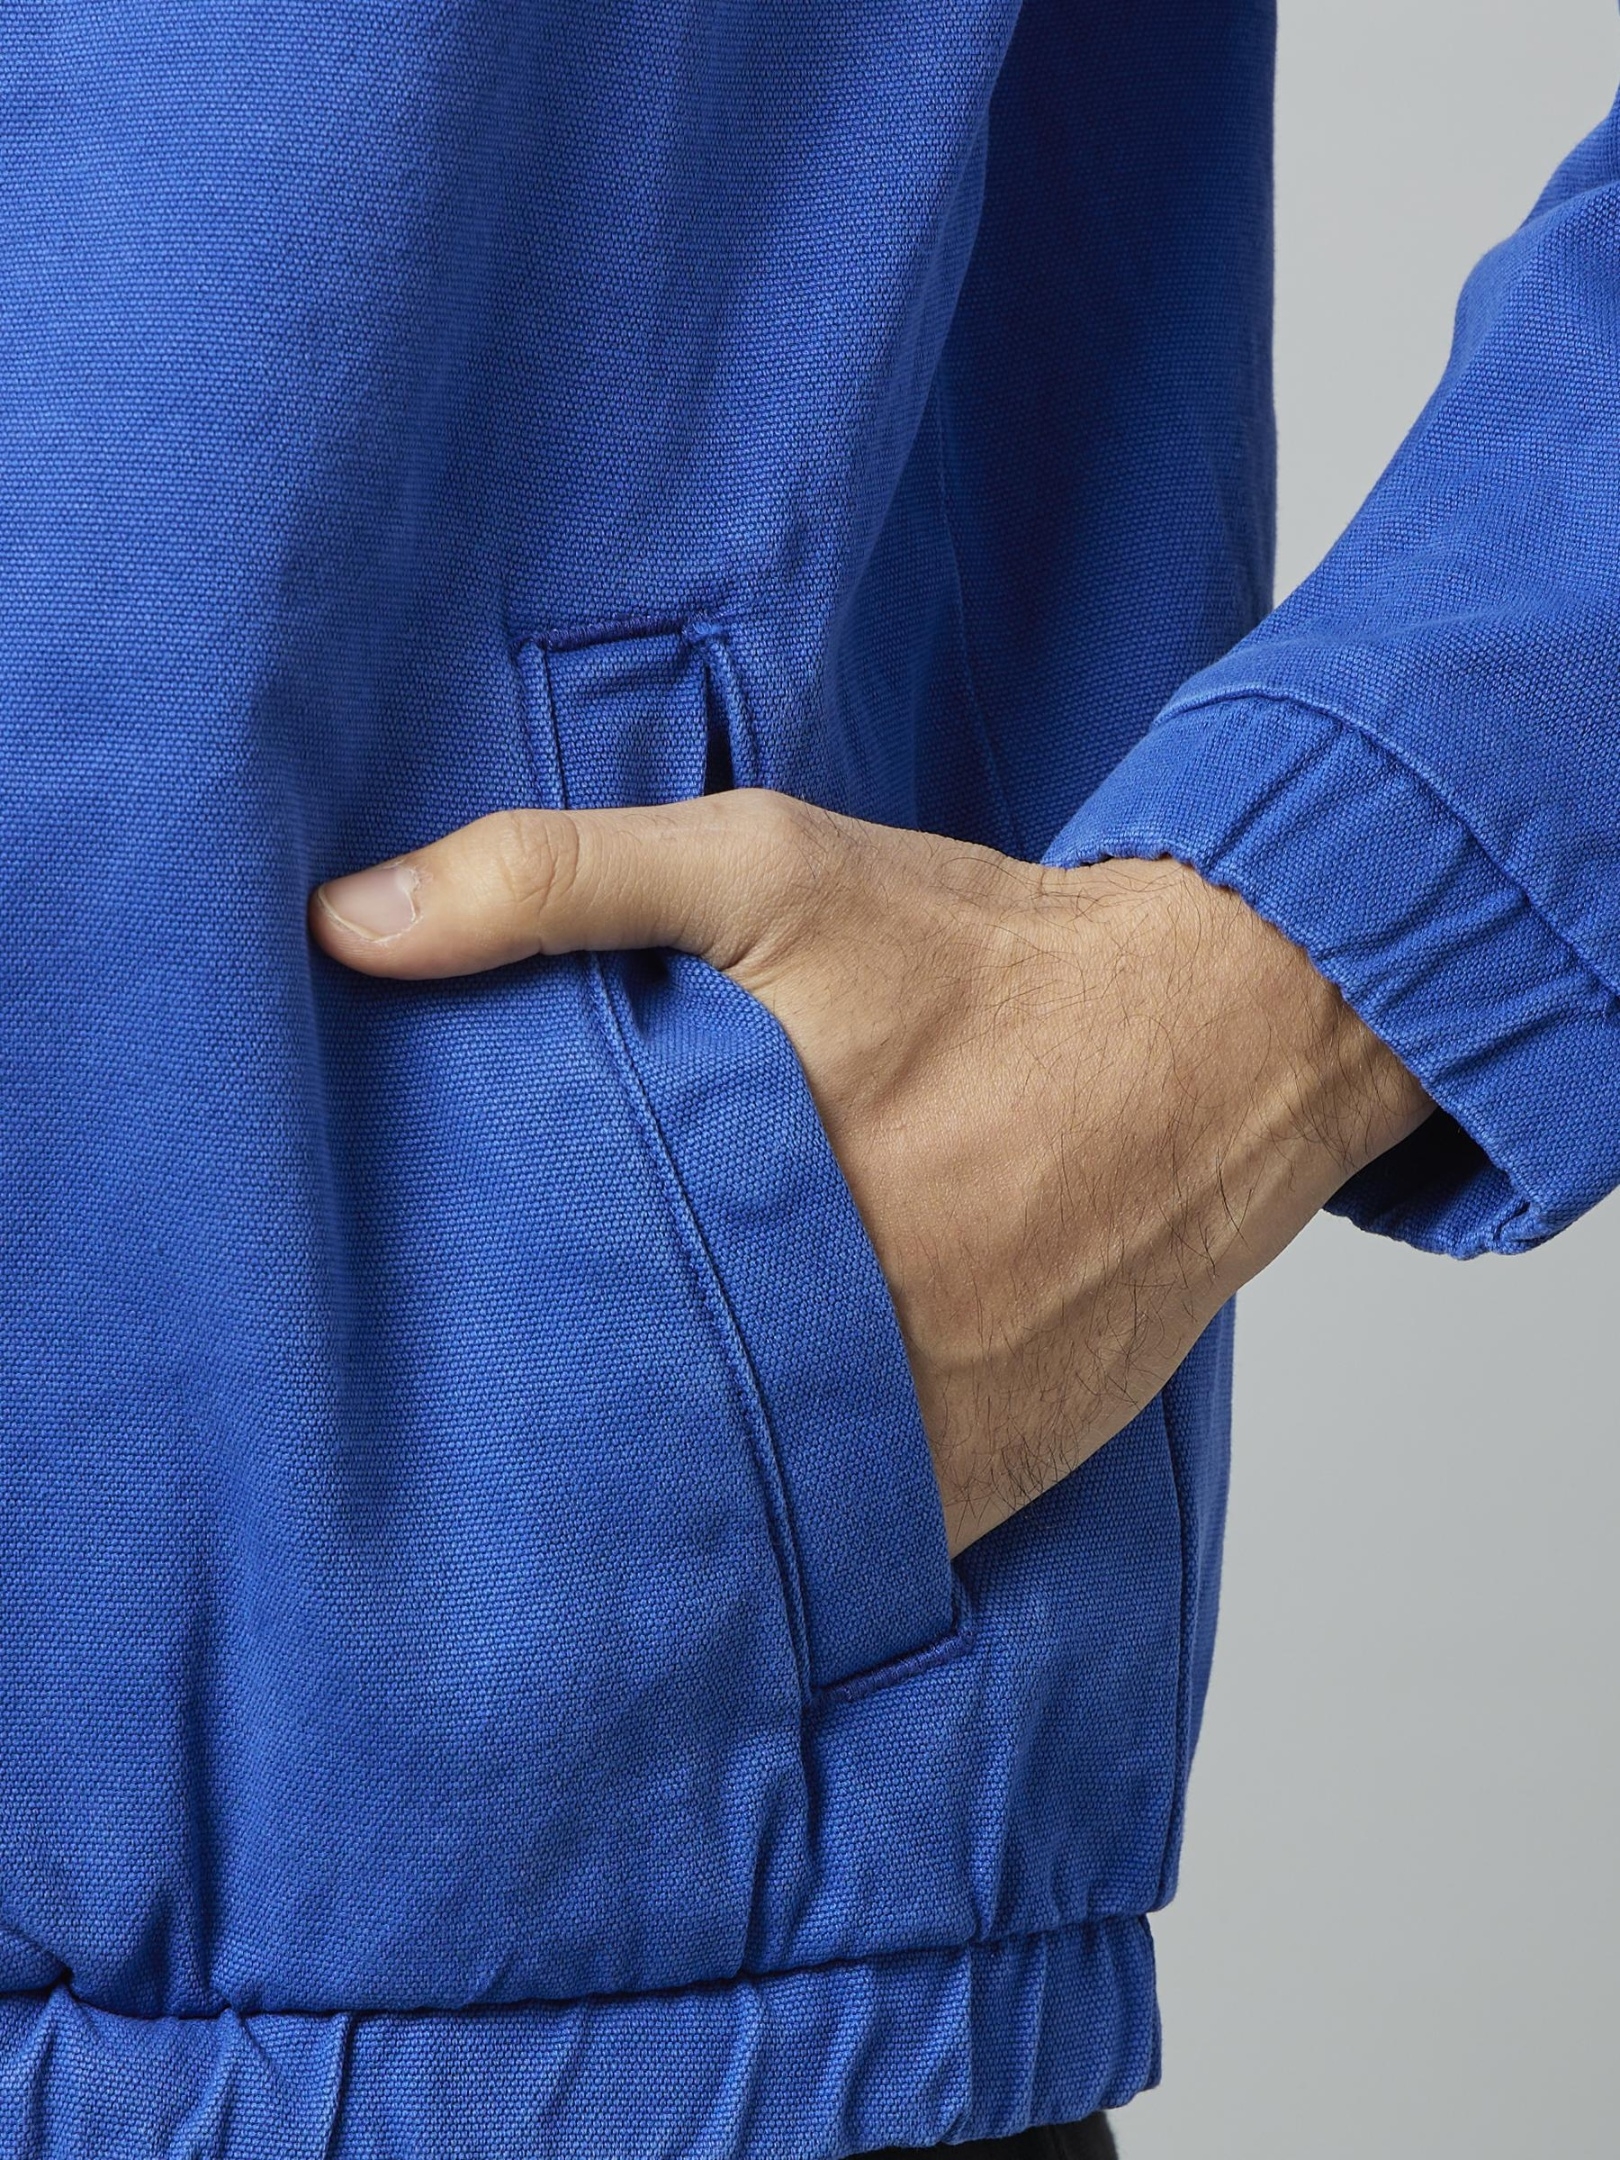 Men's Blue Solid Denim Jackets